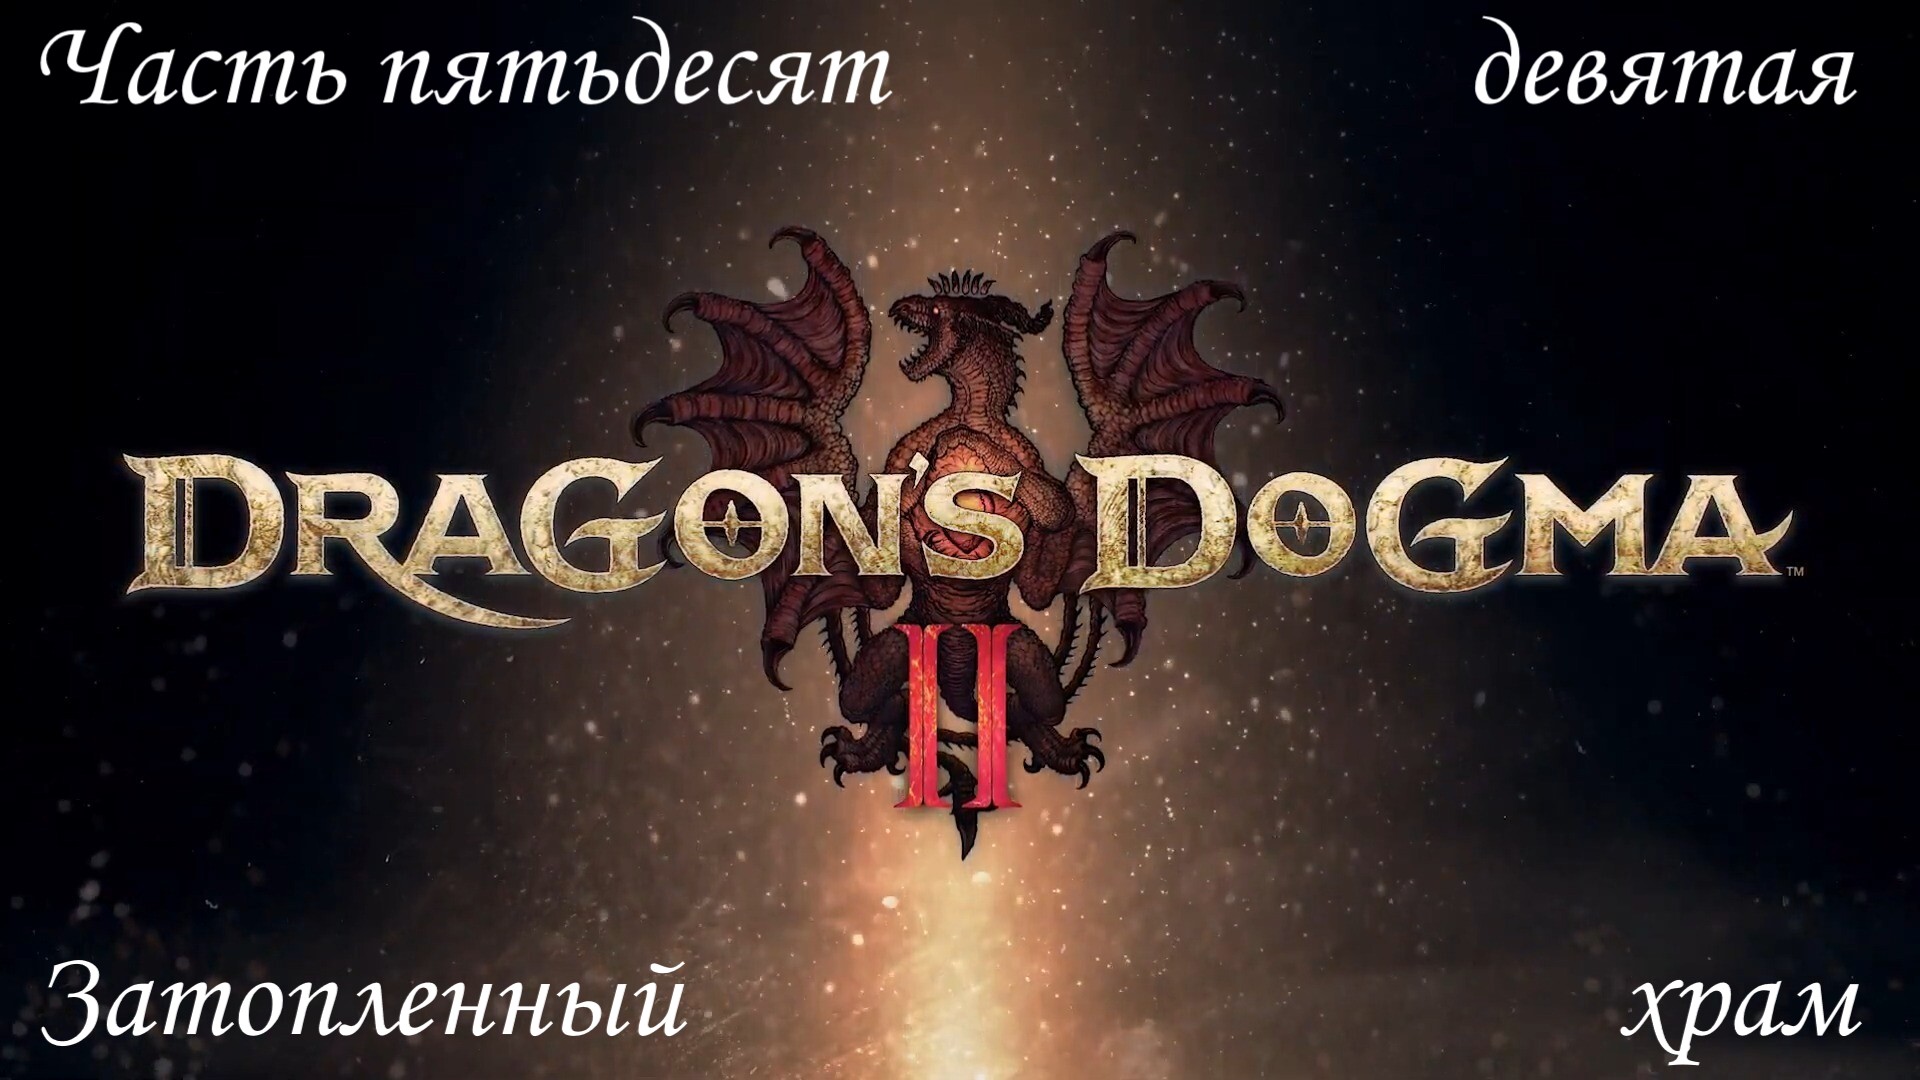 Прохождение Dragon's Dogma 2 на русском - Часть пятьдесят девятая. Затопленный храм